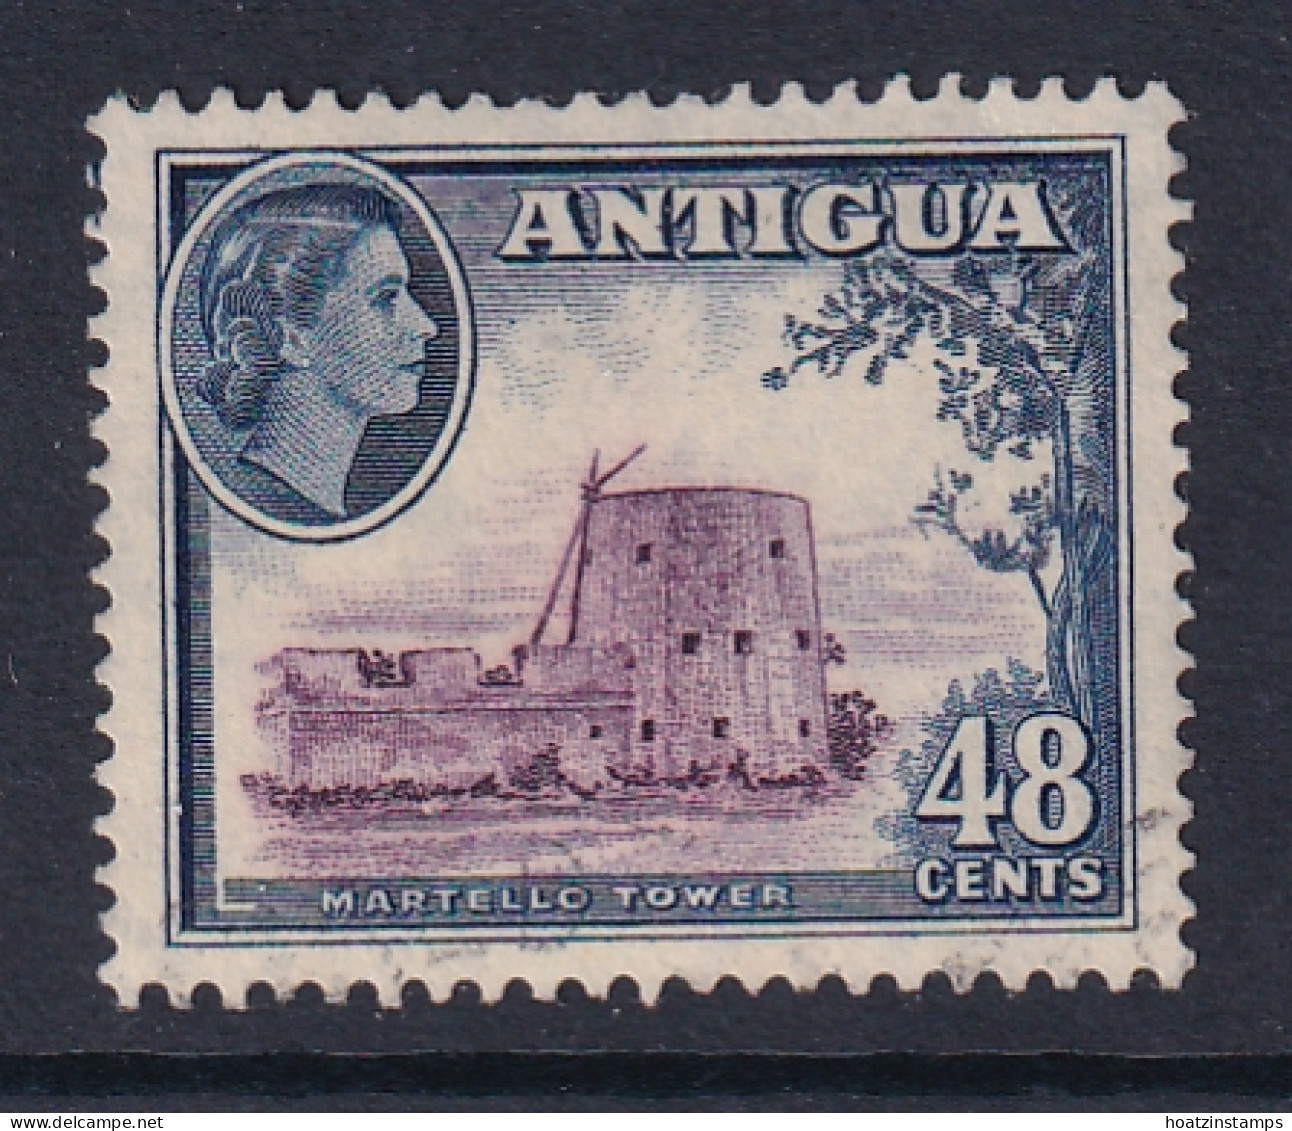 Antigua: 1953/62   QE II - Pictorial     SG130    48c     Used - 1858-1960 Colonia Britannica